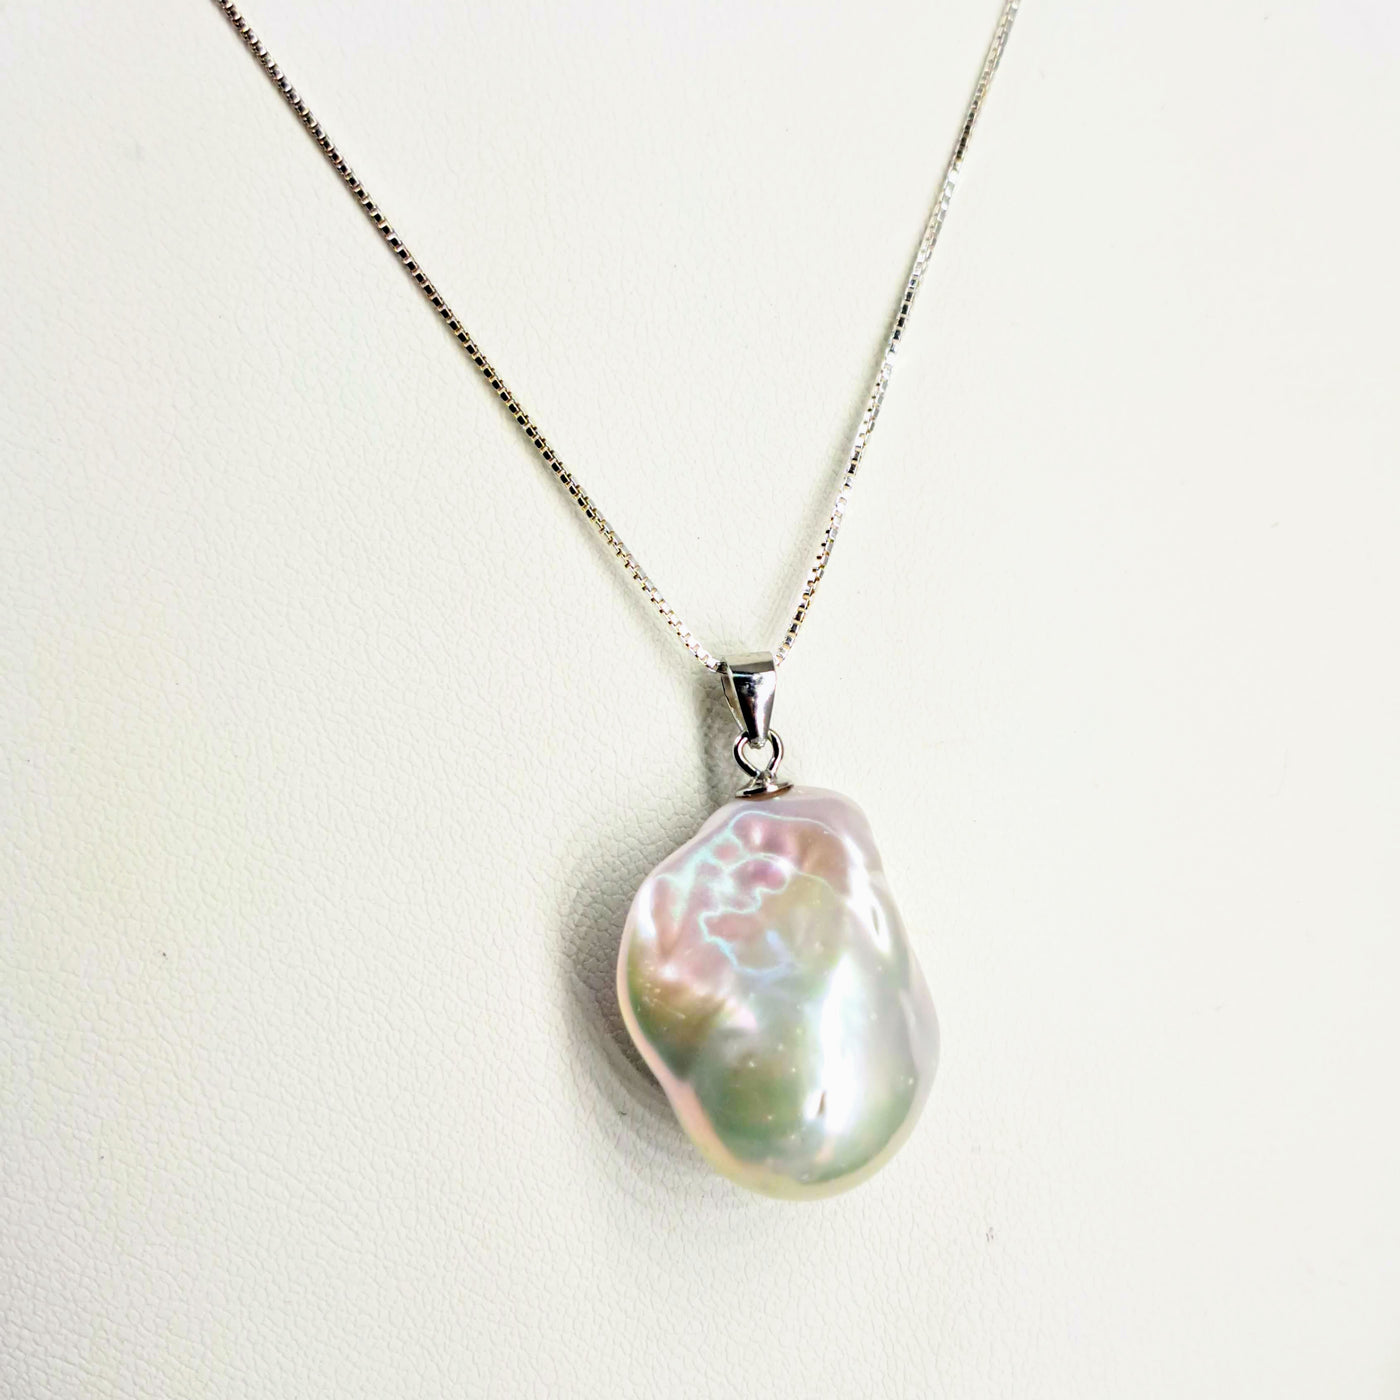 "Baroque Drop" Pendant Necklace - Baroque Pearl, Sterling